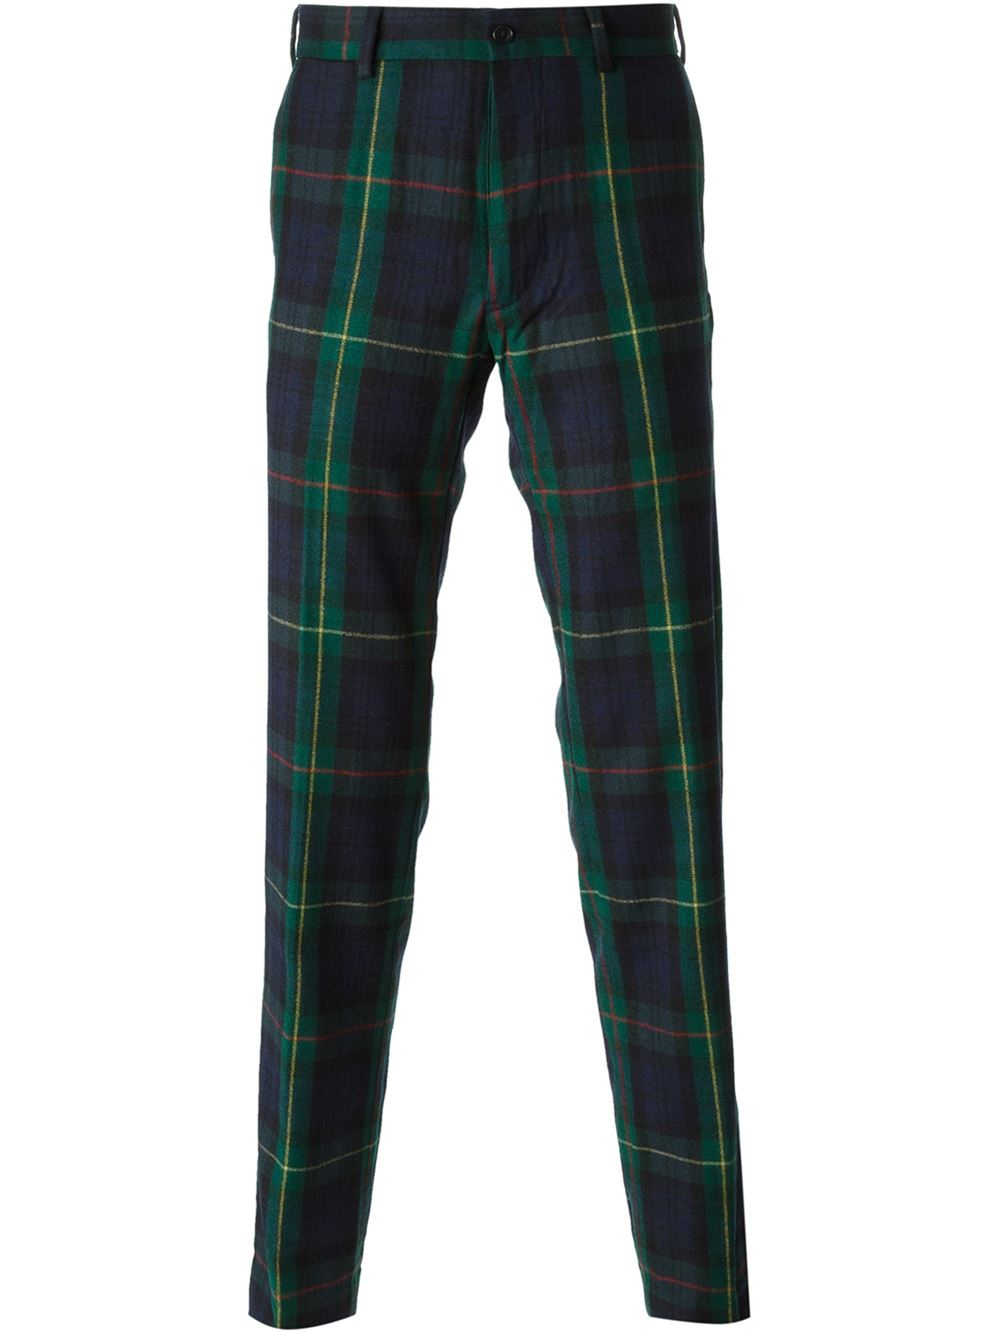 Lyst - Polo Ralph Lauren Tartan Patterned Trousers in Green for Men